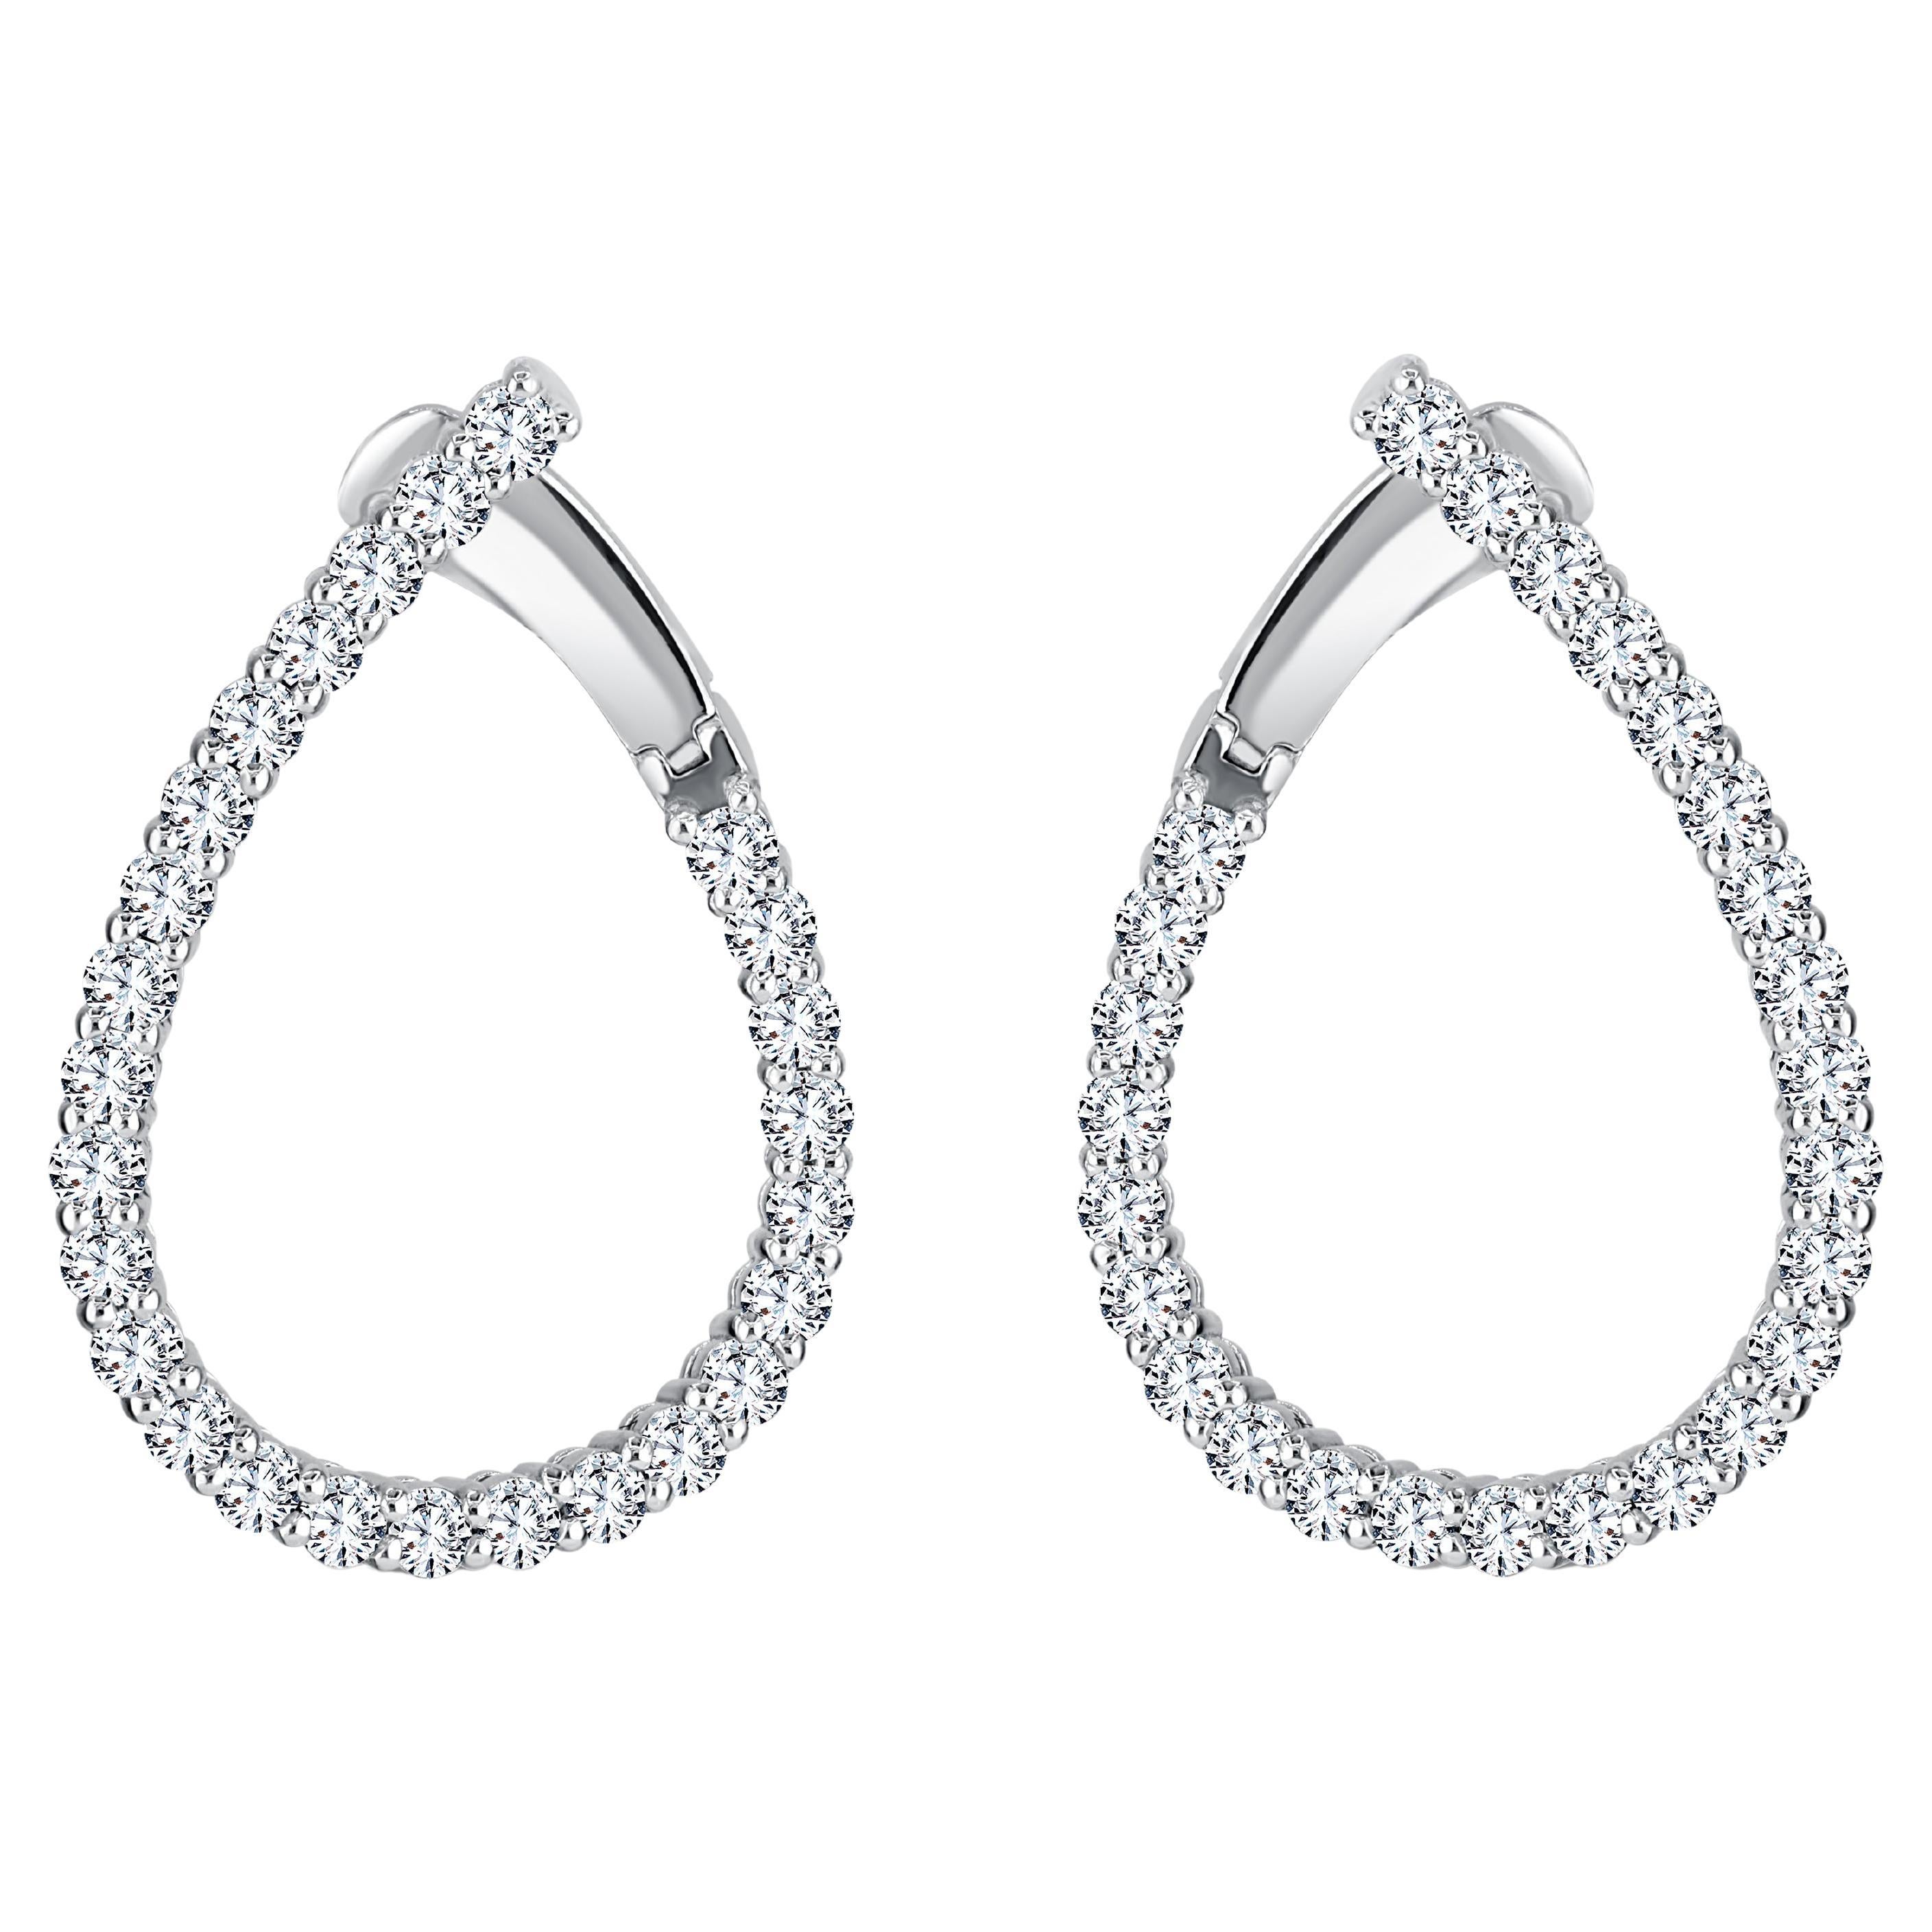 2.58 Carat Diamond Teardrop Hoop Earrings in 14k White Gold